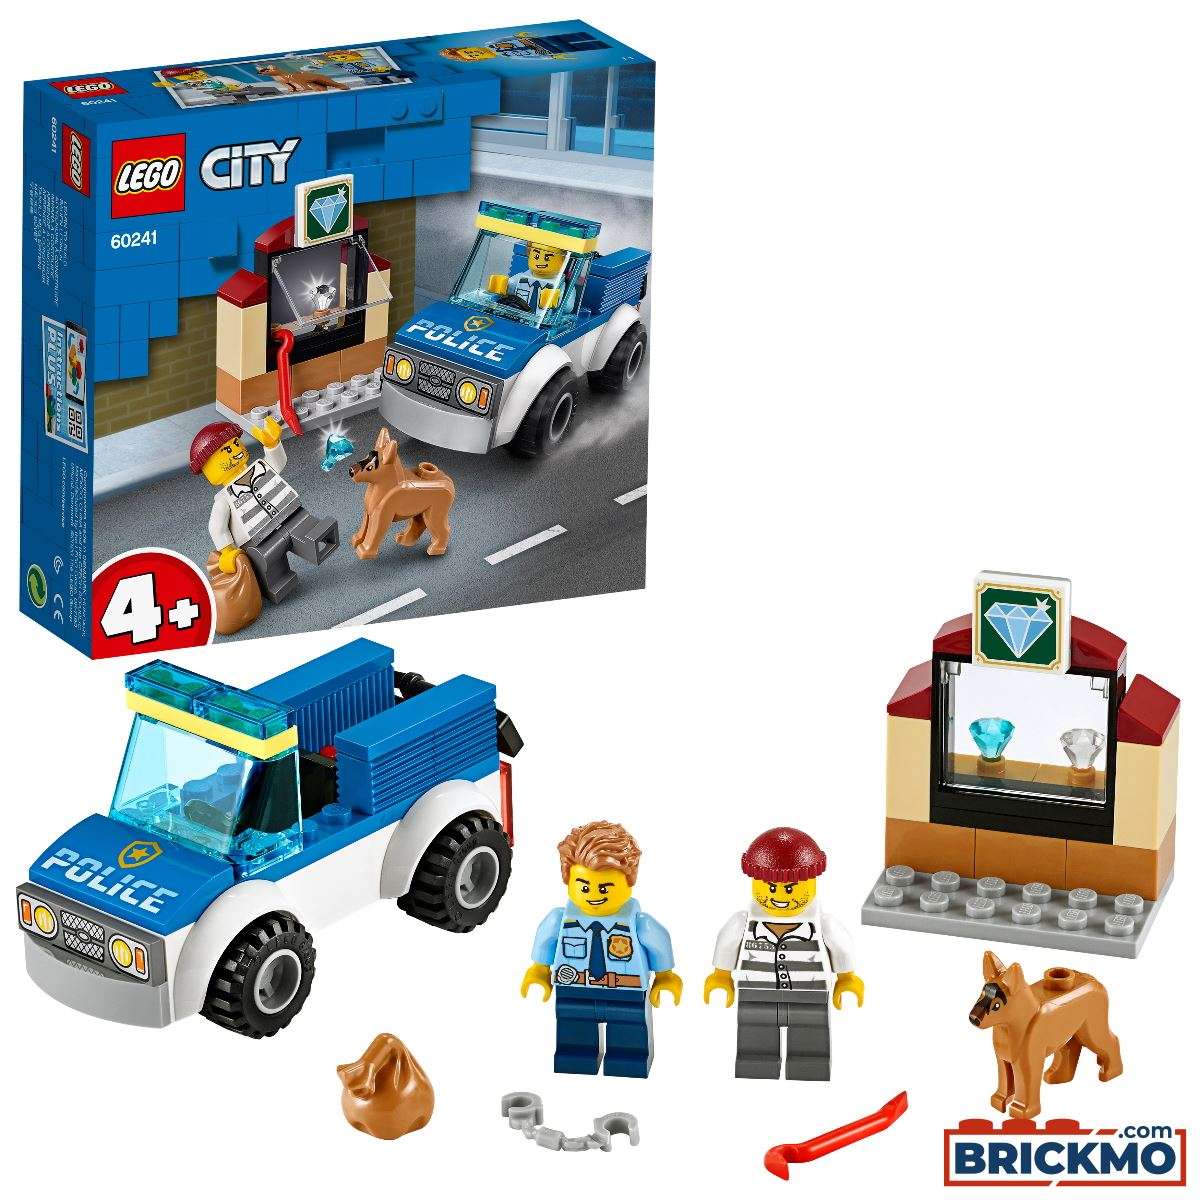 LEGO City 60241 Polizei Polizeihundestaffel 60241